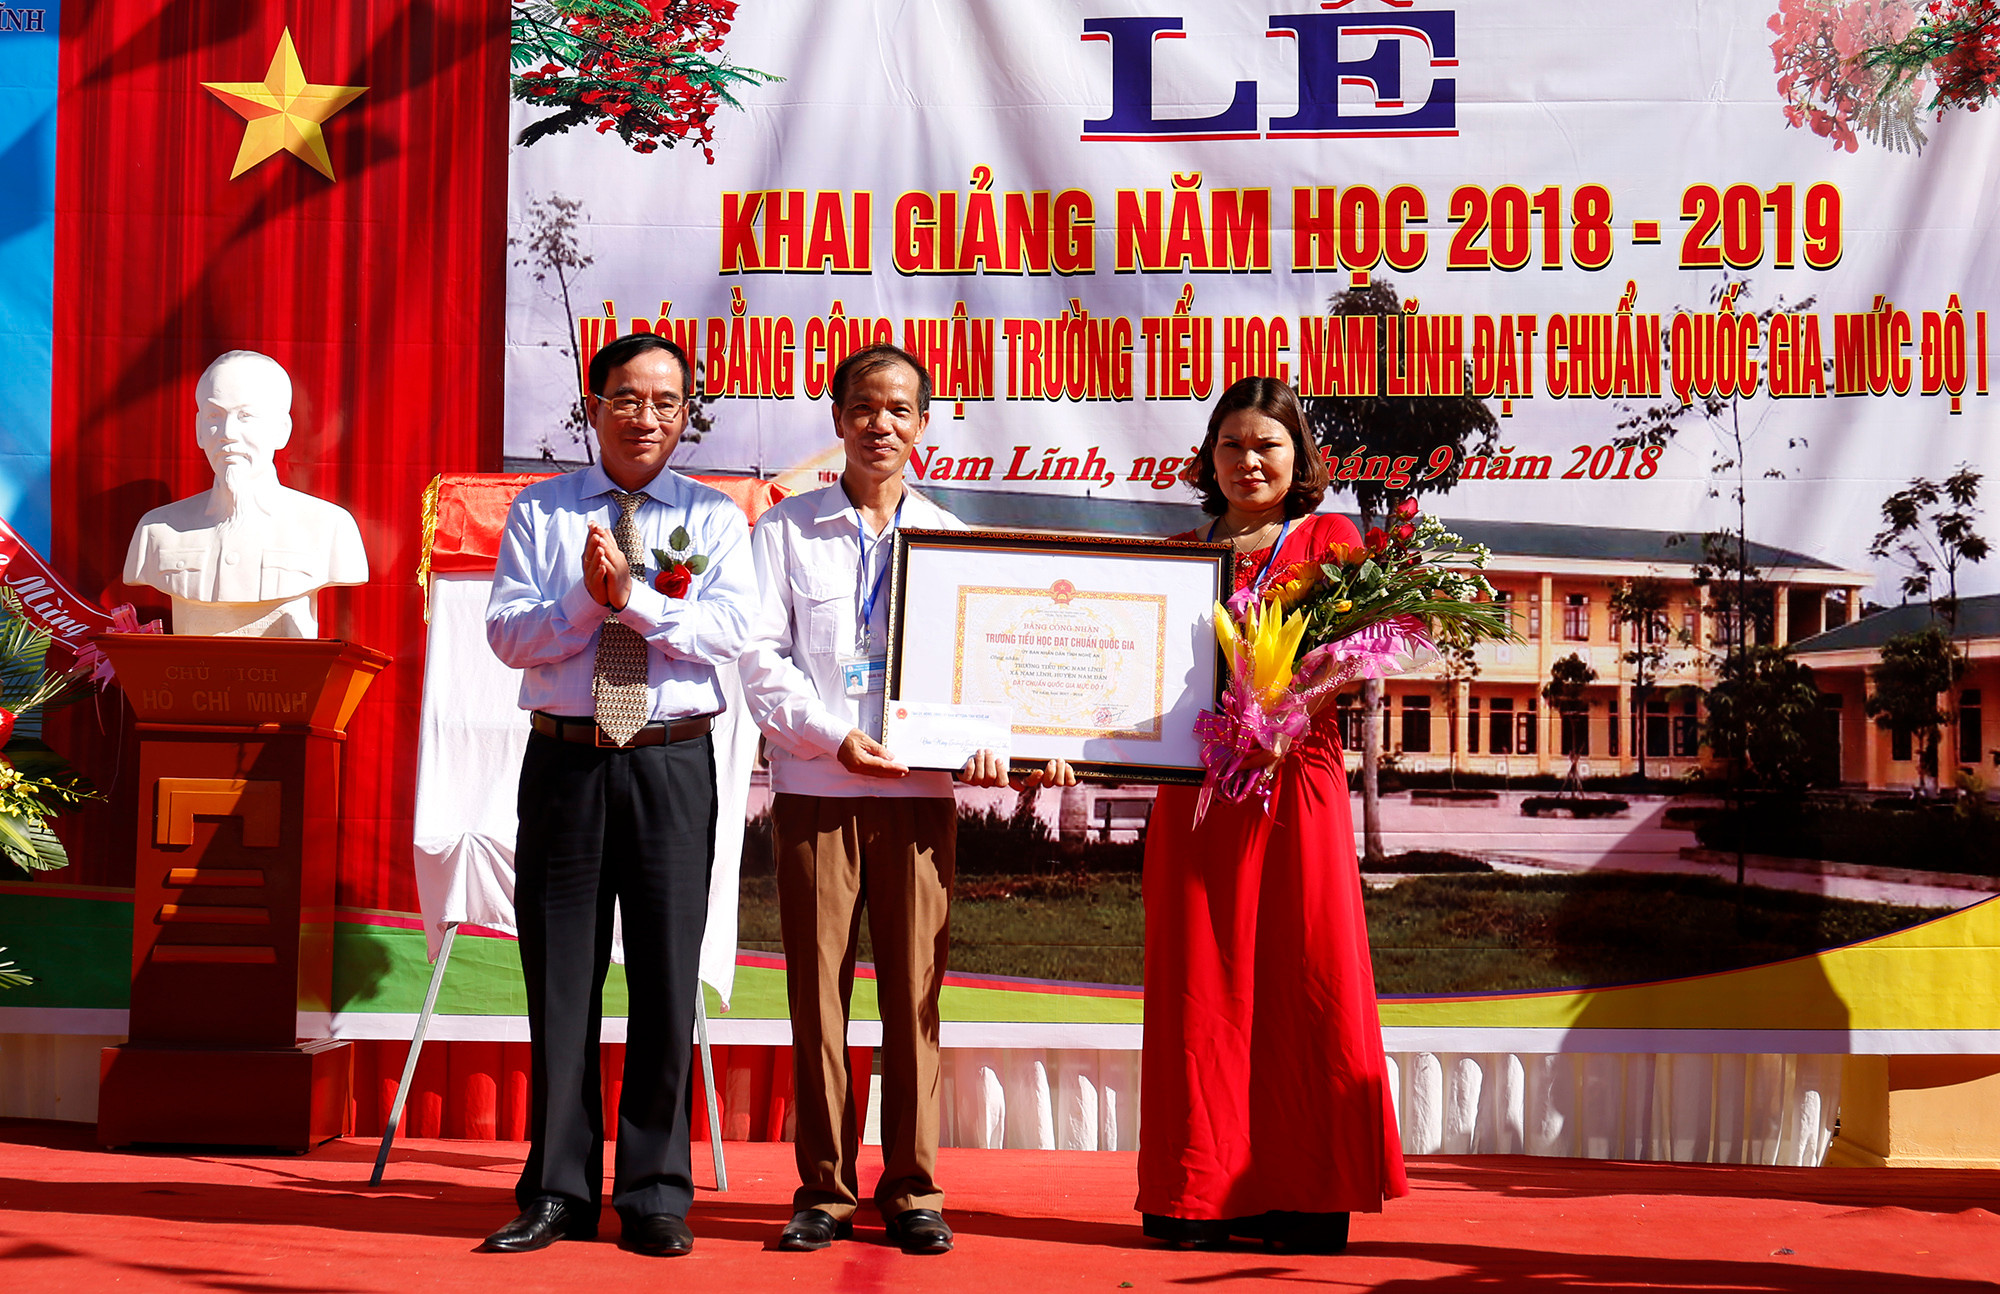 Đồng chí Hoàng Viết Đường trao bằng công nhận Trường tiểu học Nam Lĩnh, huyện Nam Đàn đạt chuẩn Quốc gia mức độ 1. Ảnh: Đức Anh